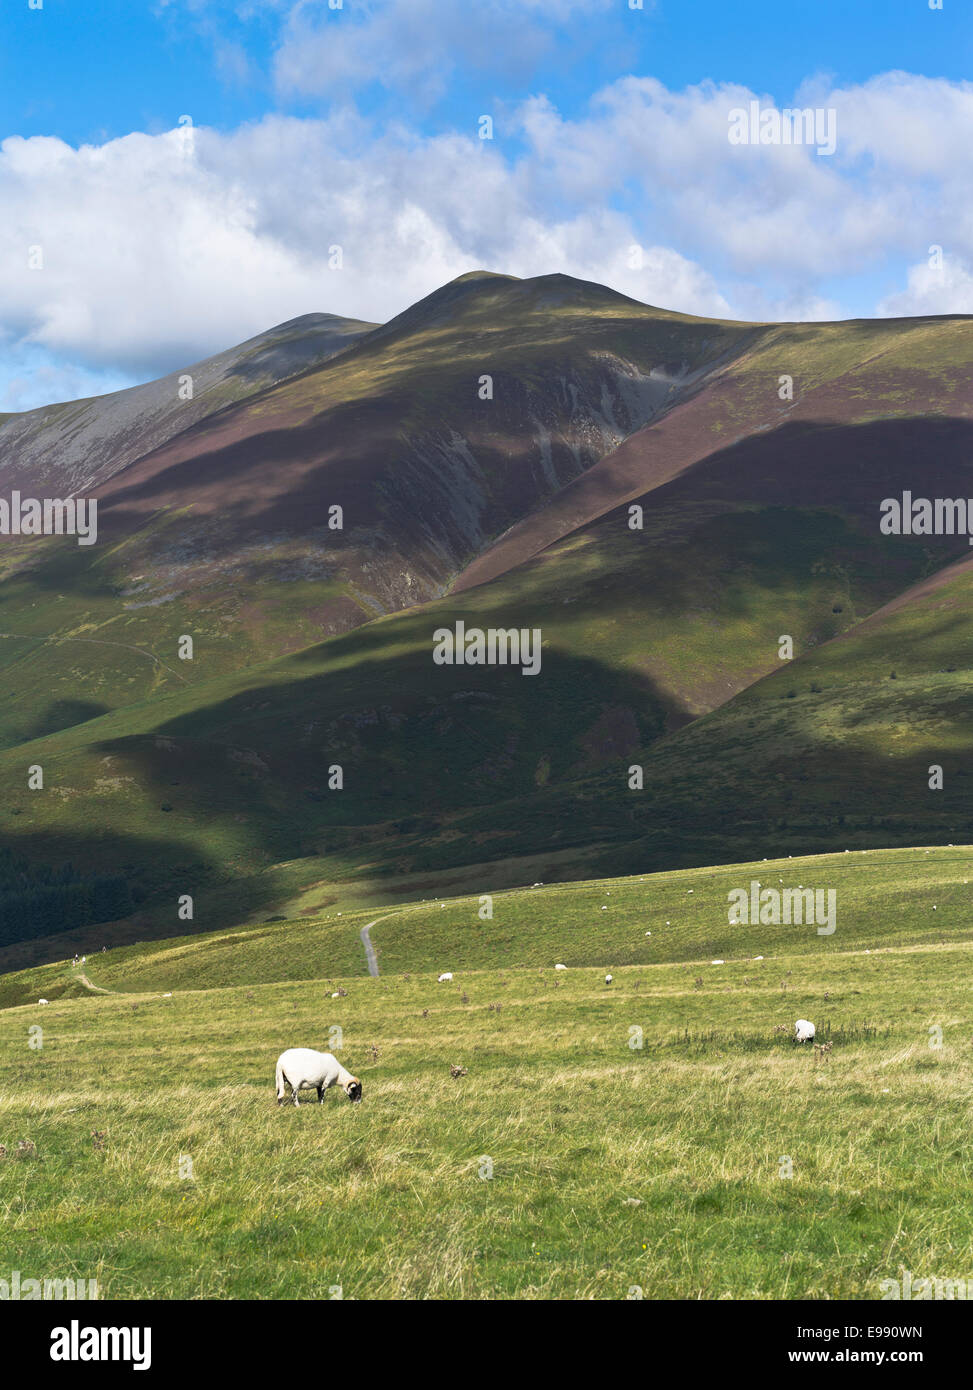 dh Latrigg Skiddaw montagna KESWICK LAKE DISTRICT Cumbrian Swalledale collina pecore pascolo campagna erba uk campane paesaggio gran bretagna cumbria inghilterra Foto Stock